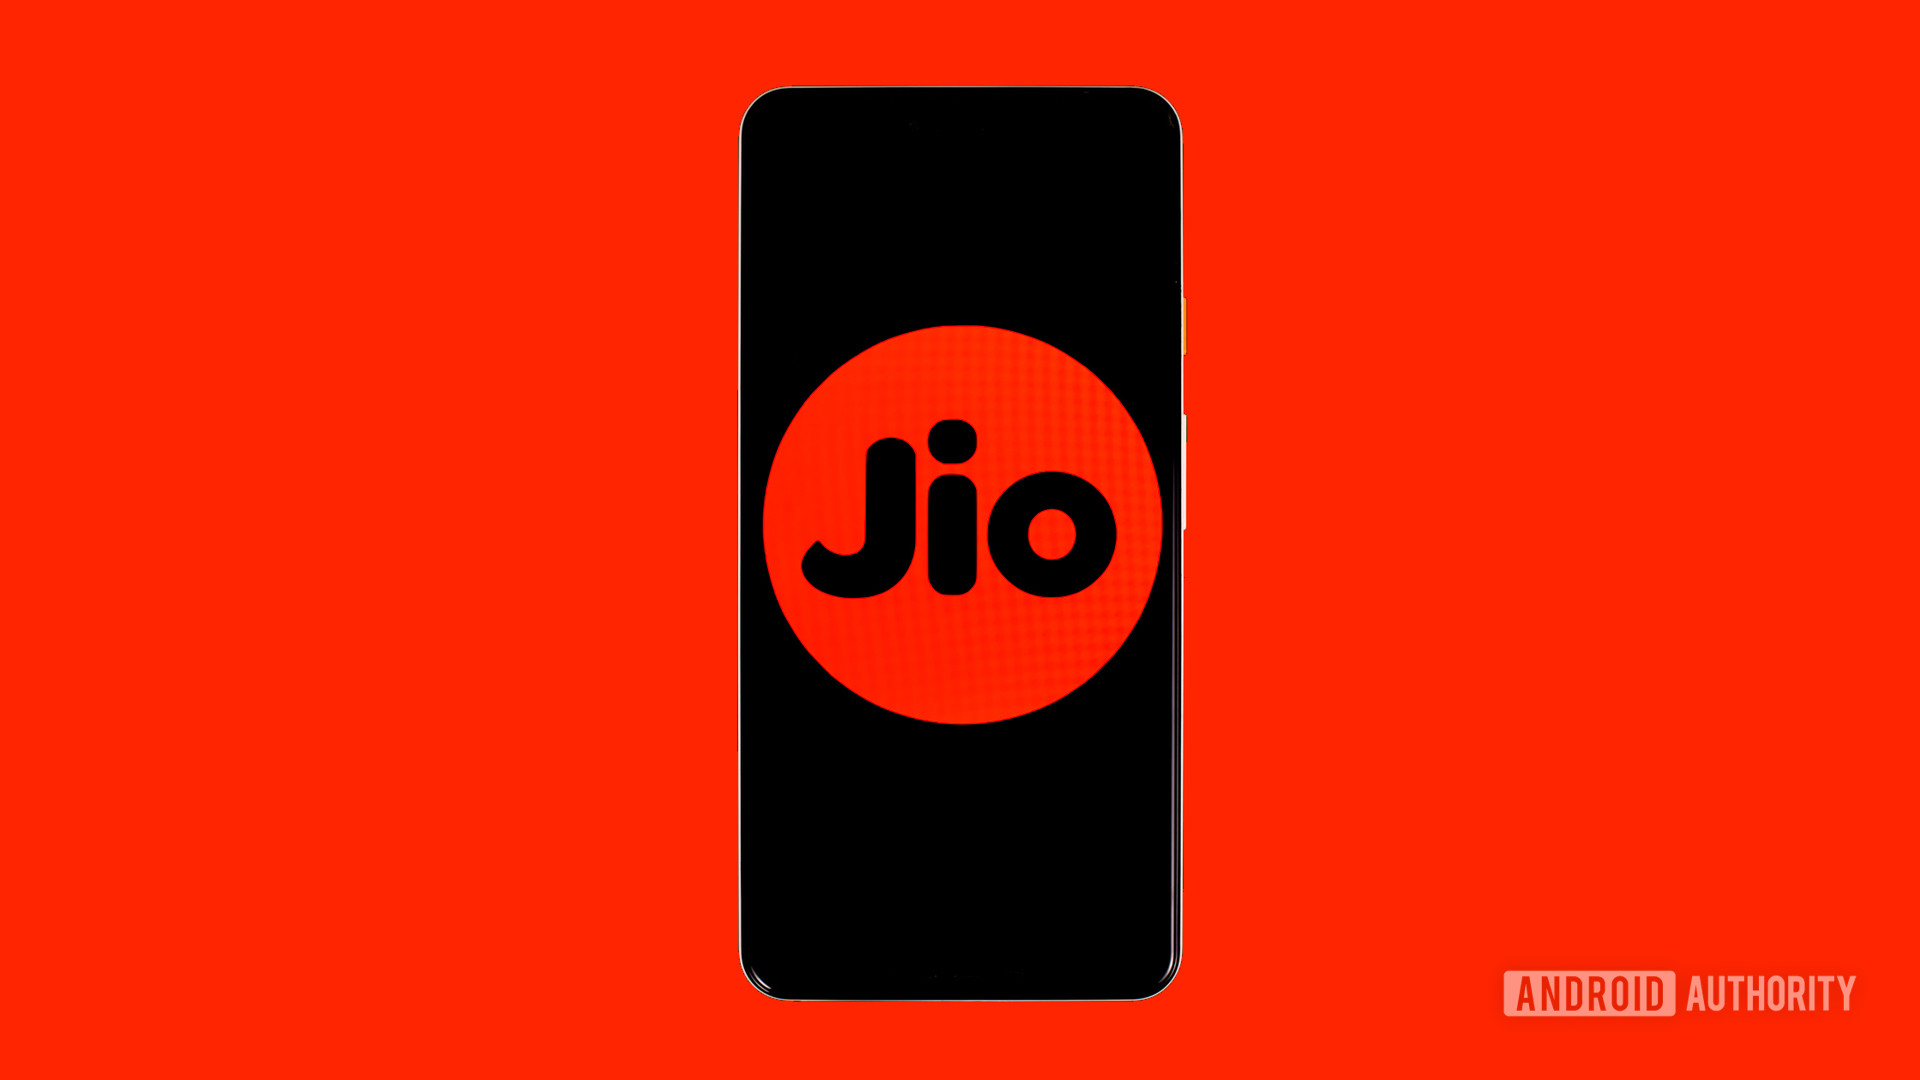 Jio carrier stock logo